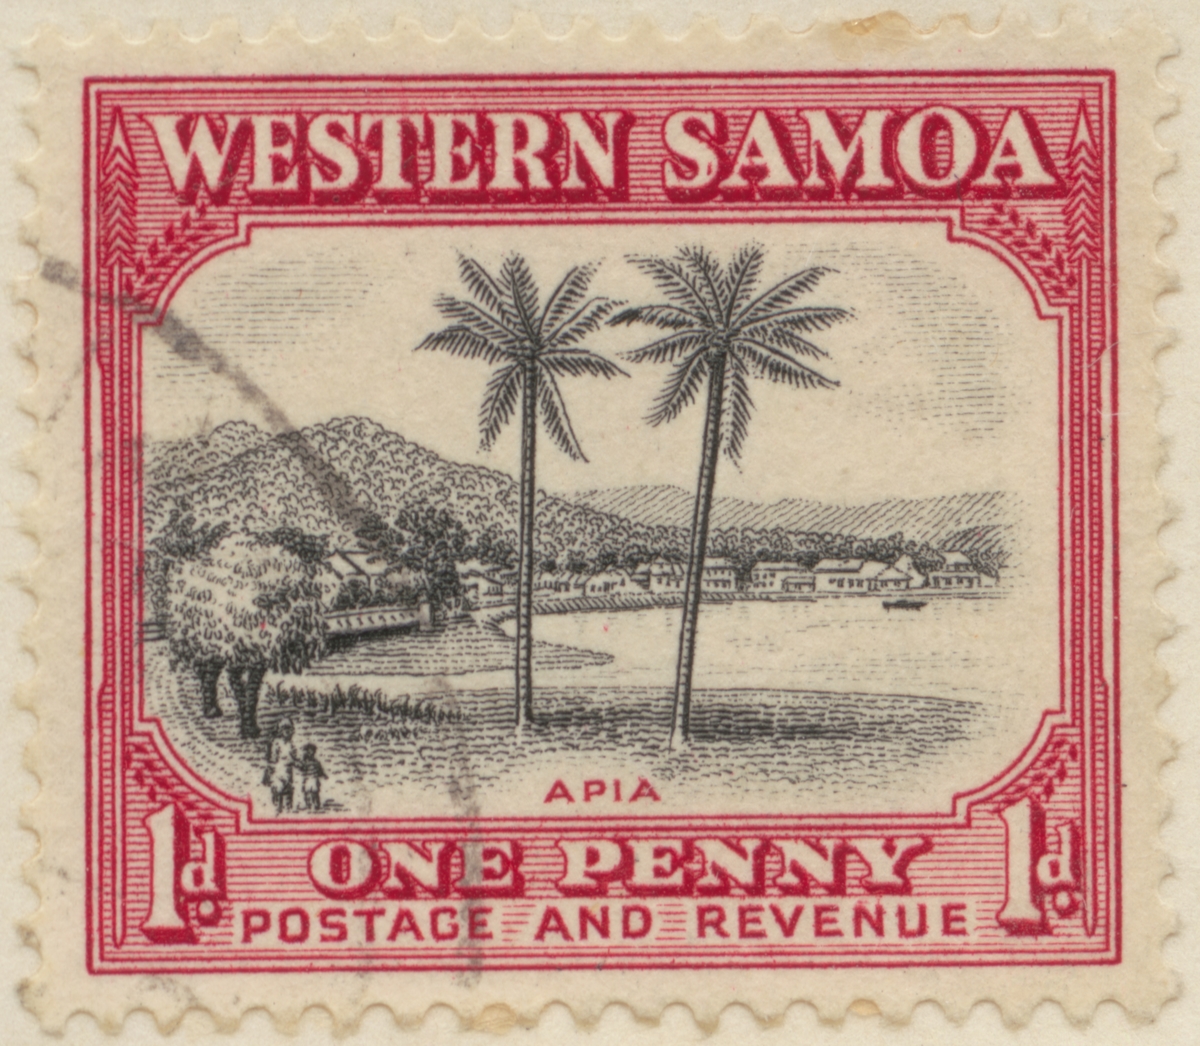 Frimärke ur Gösta Bodmans filatelistiska motivsamling, påbörjad 1950.
Frimärke från Samoaöarna, 1935. Motiv av palmer vid huvudstaden Apia på ön Upolu.